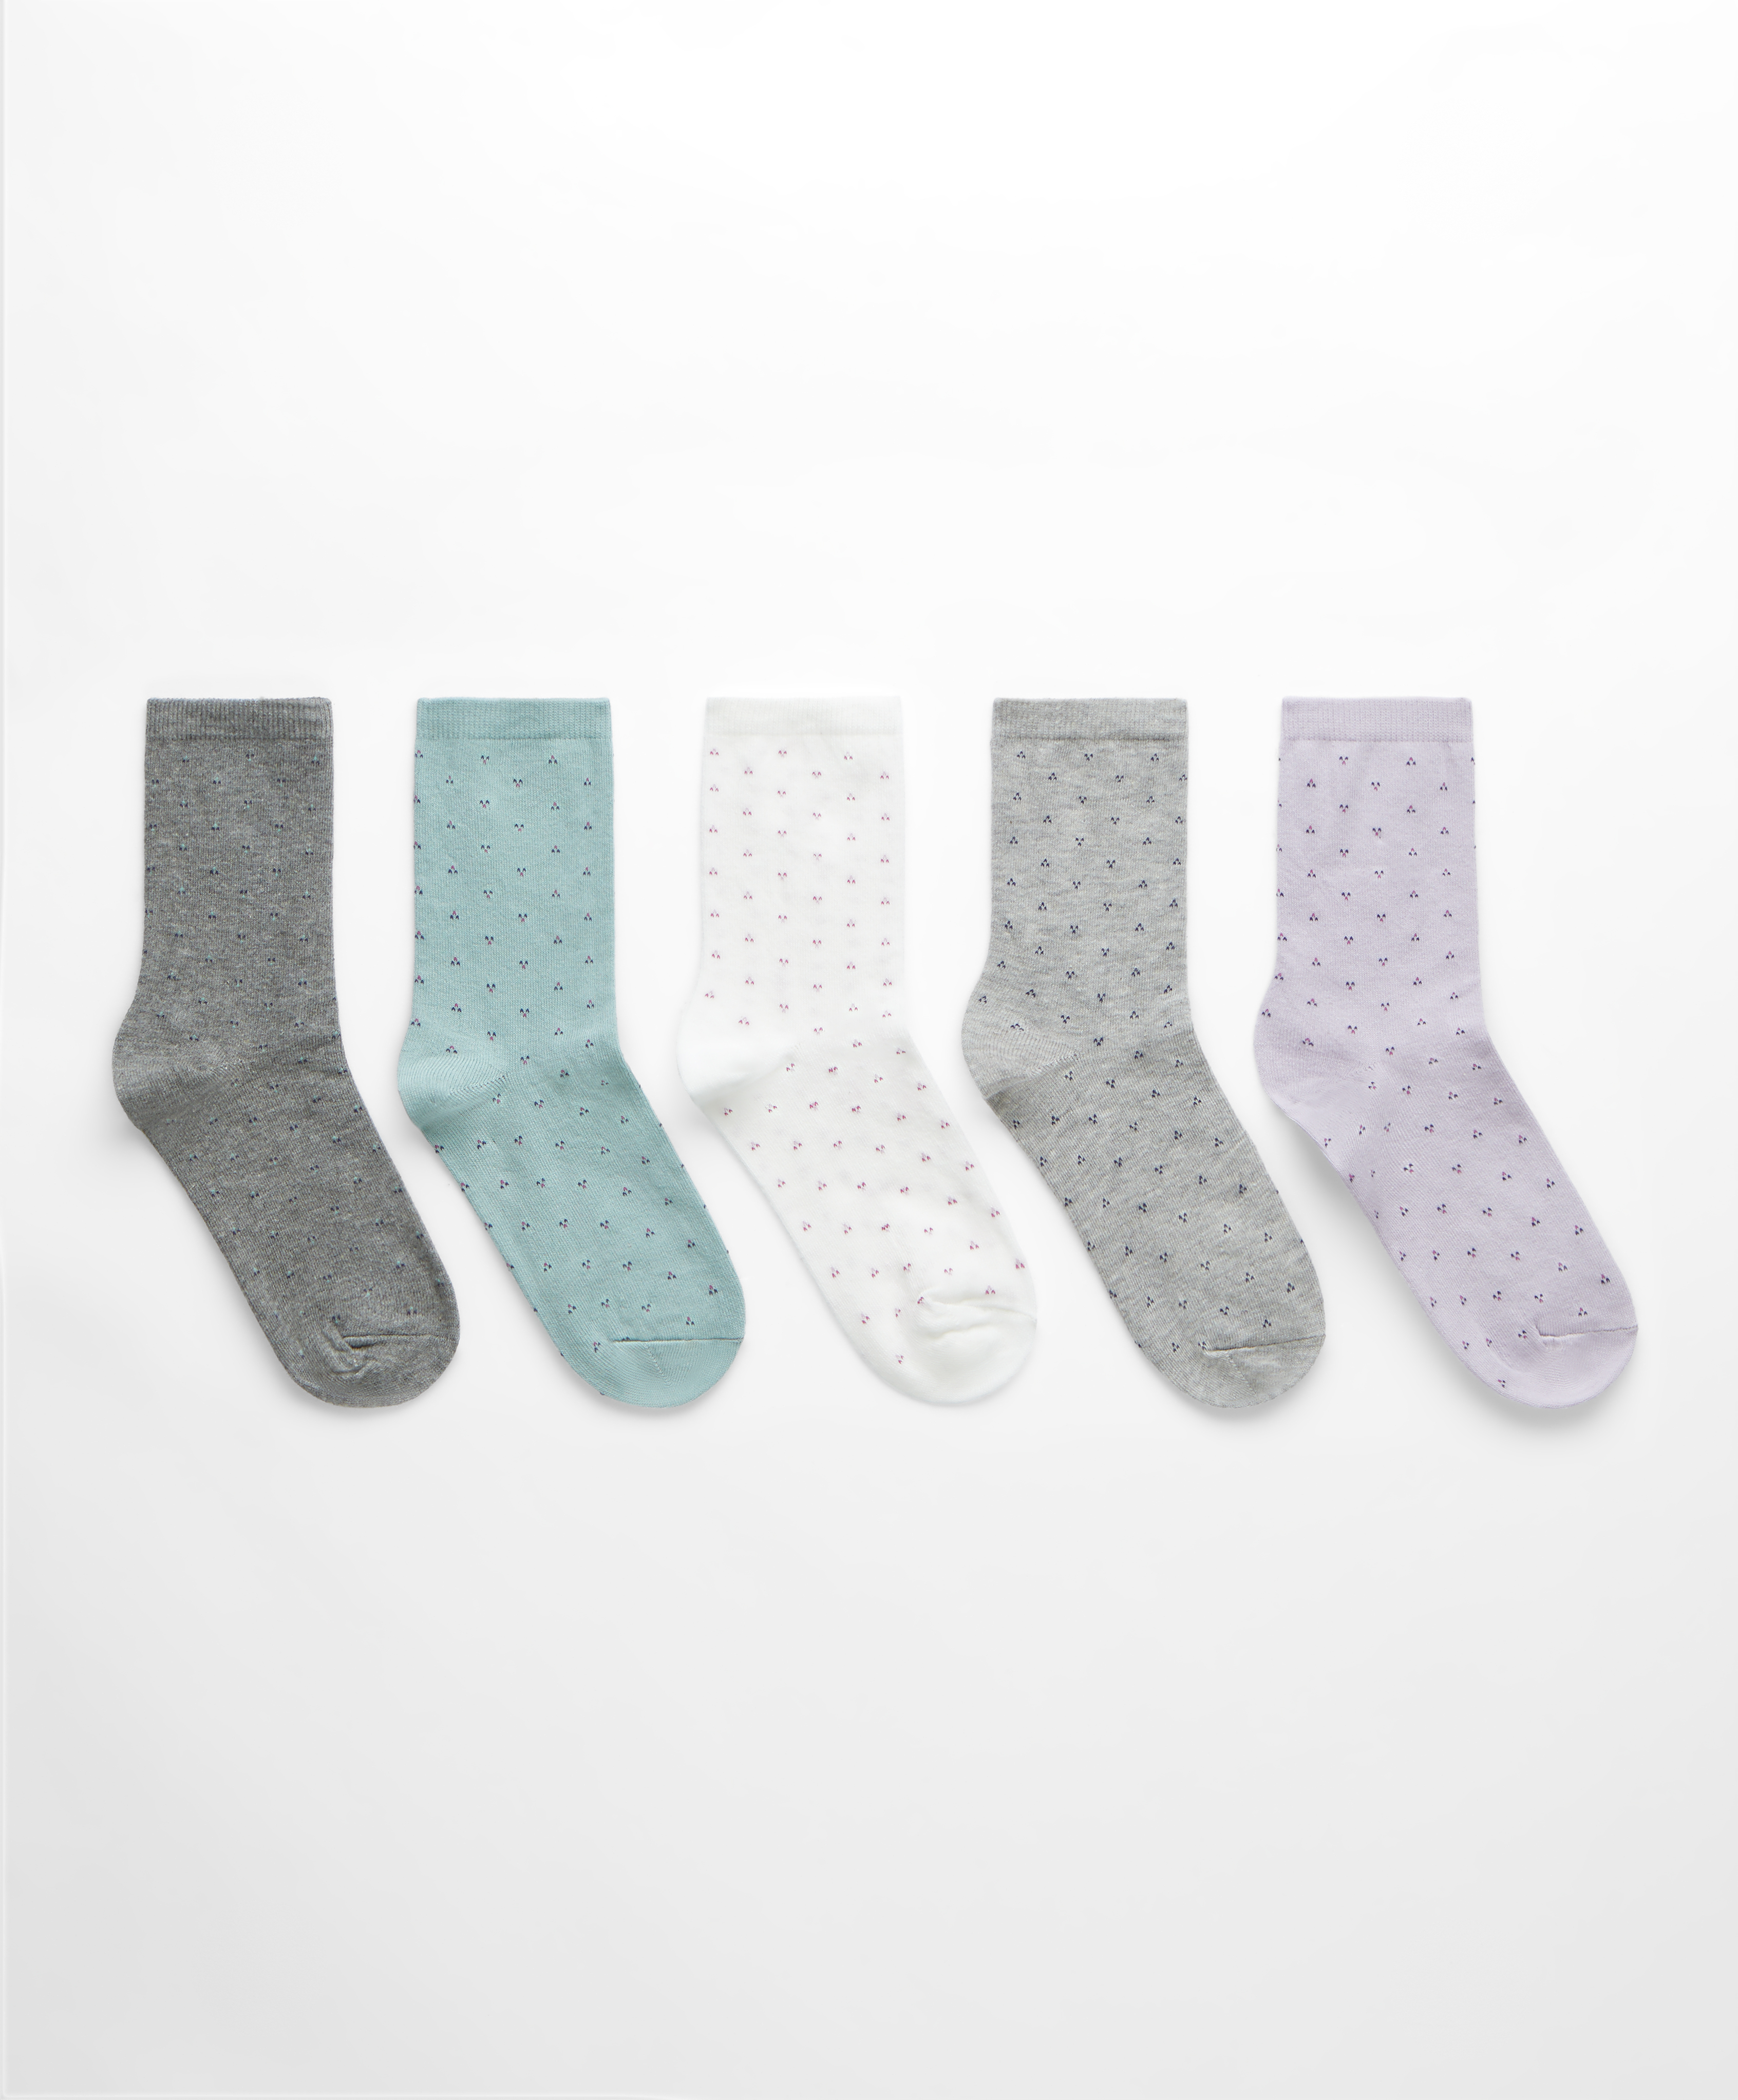 5 pares de calcetines classic algodón fantasía